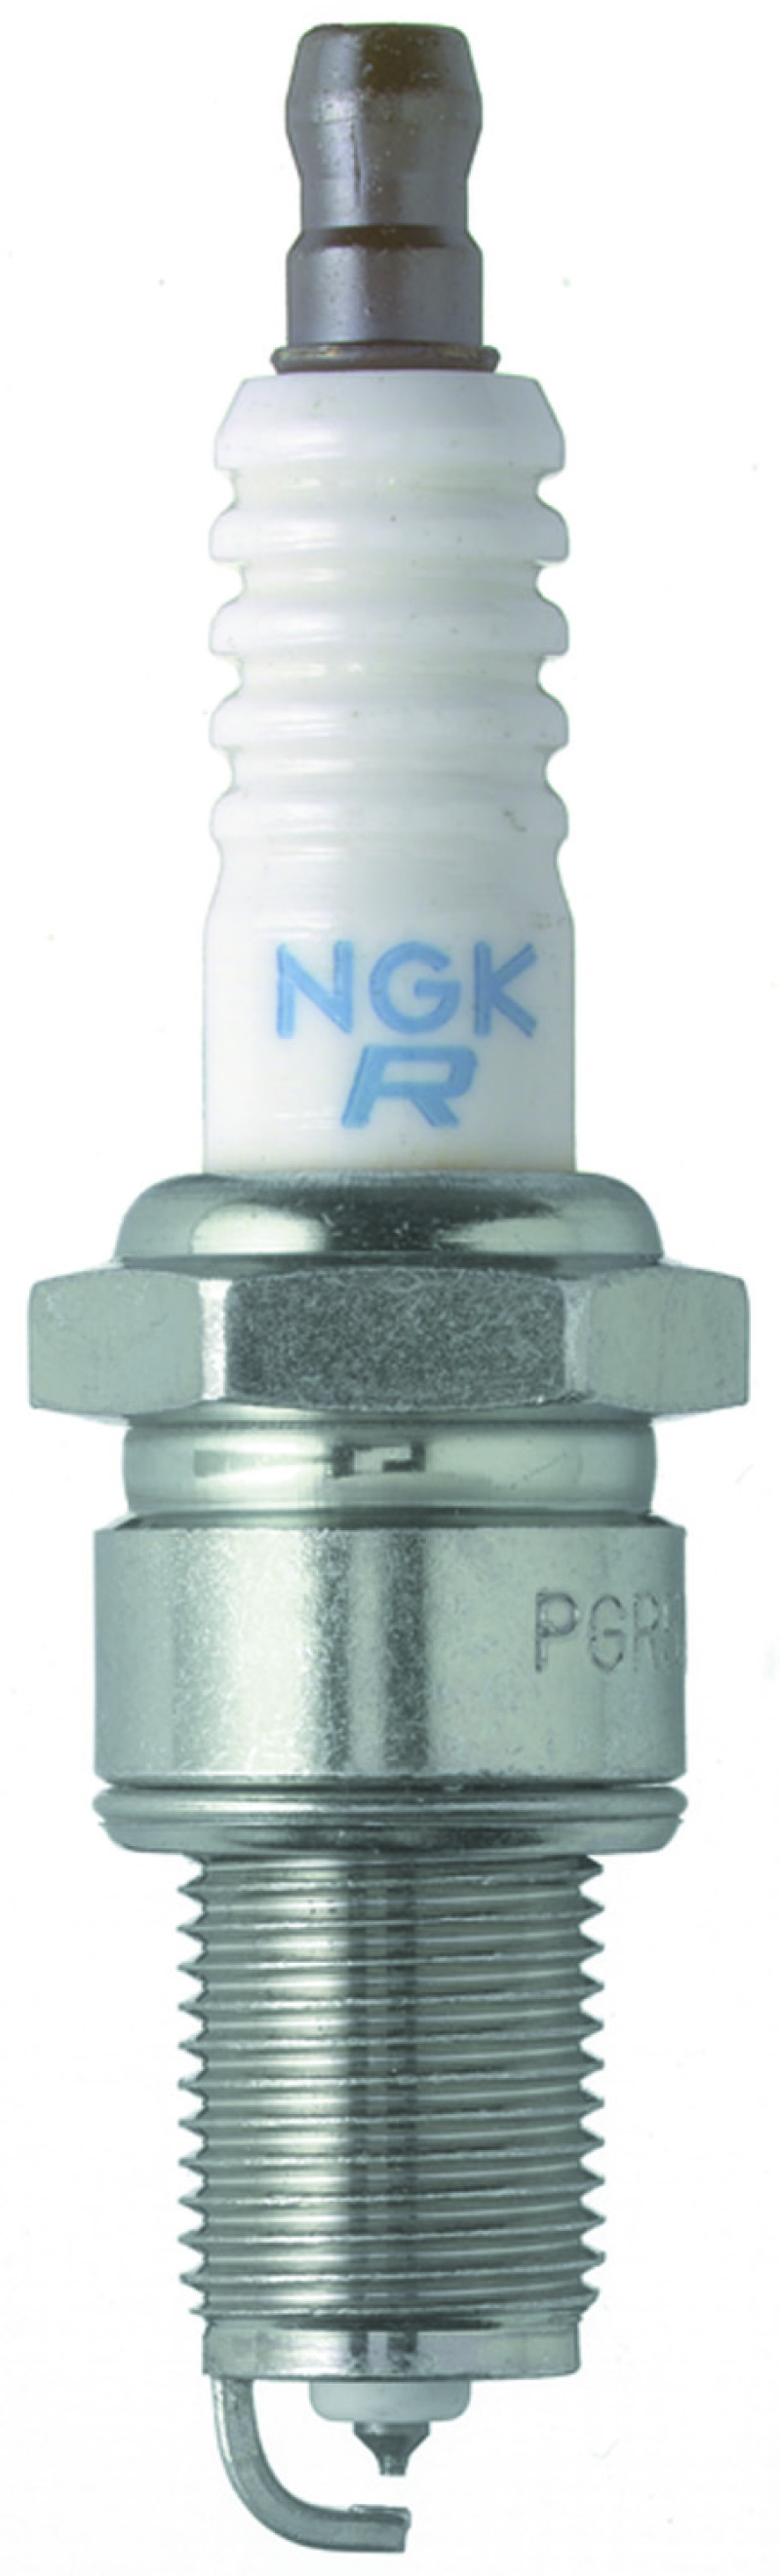 NGK Laser Platinum Spark Plug Box of 4 (PGR5A-11) - 3573